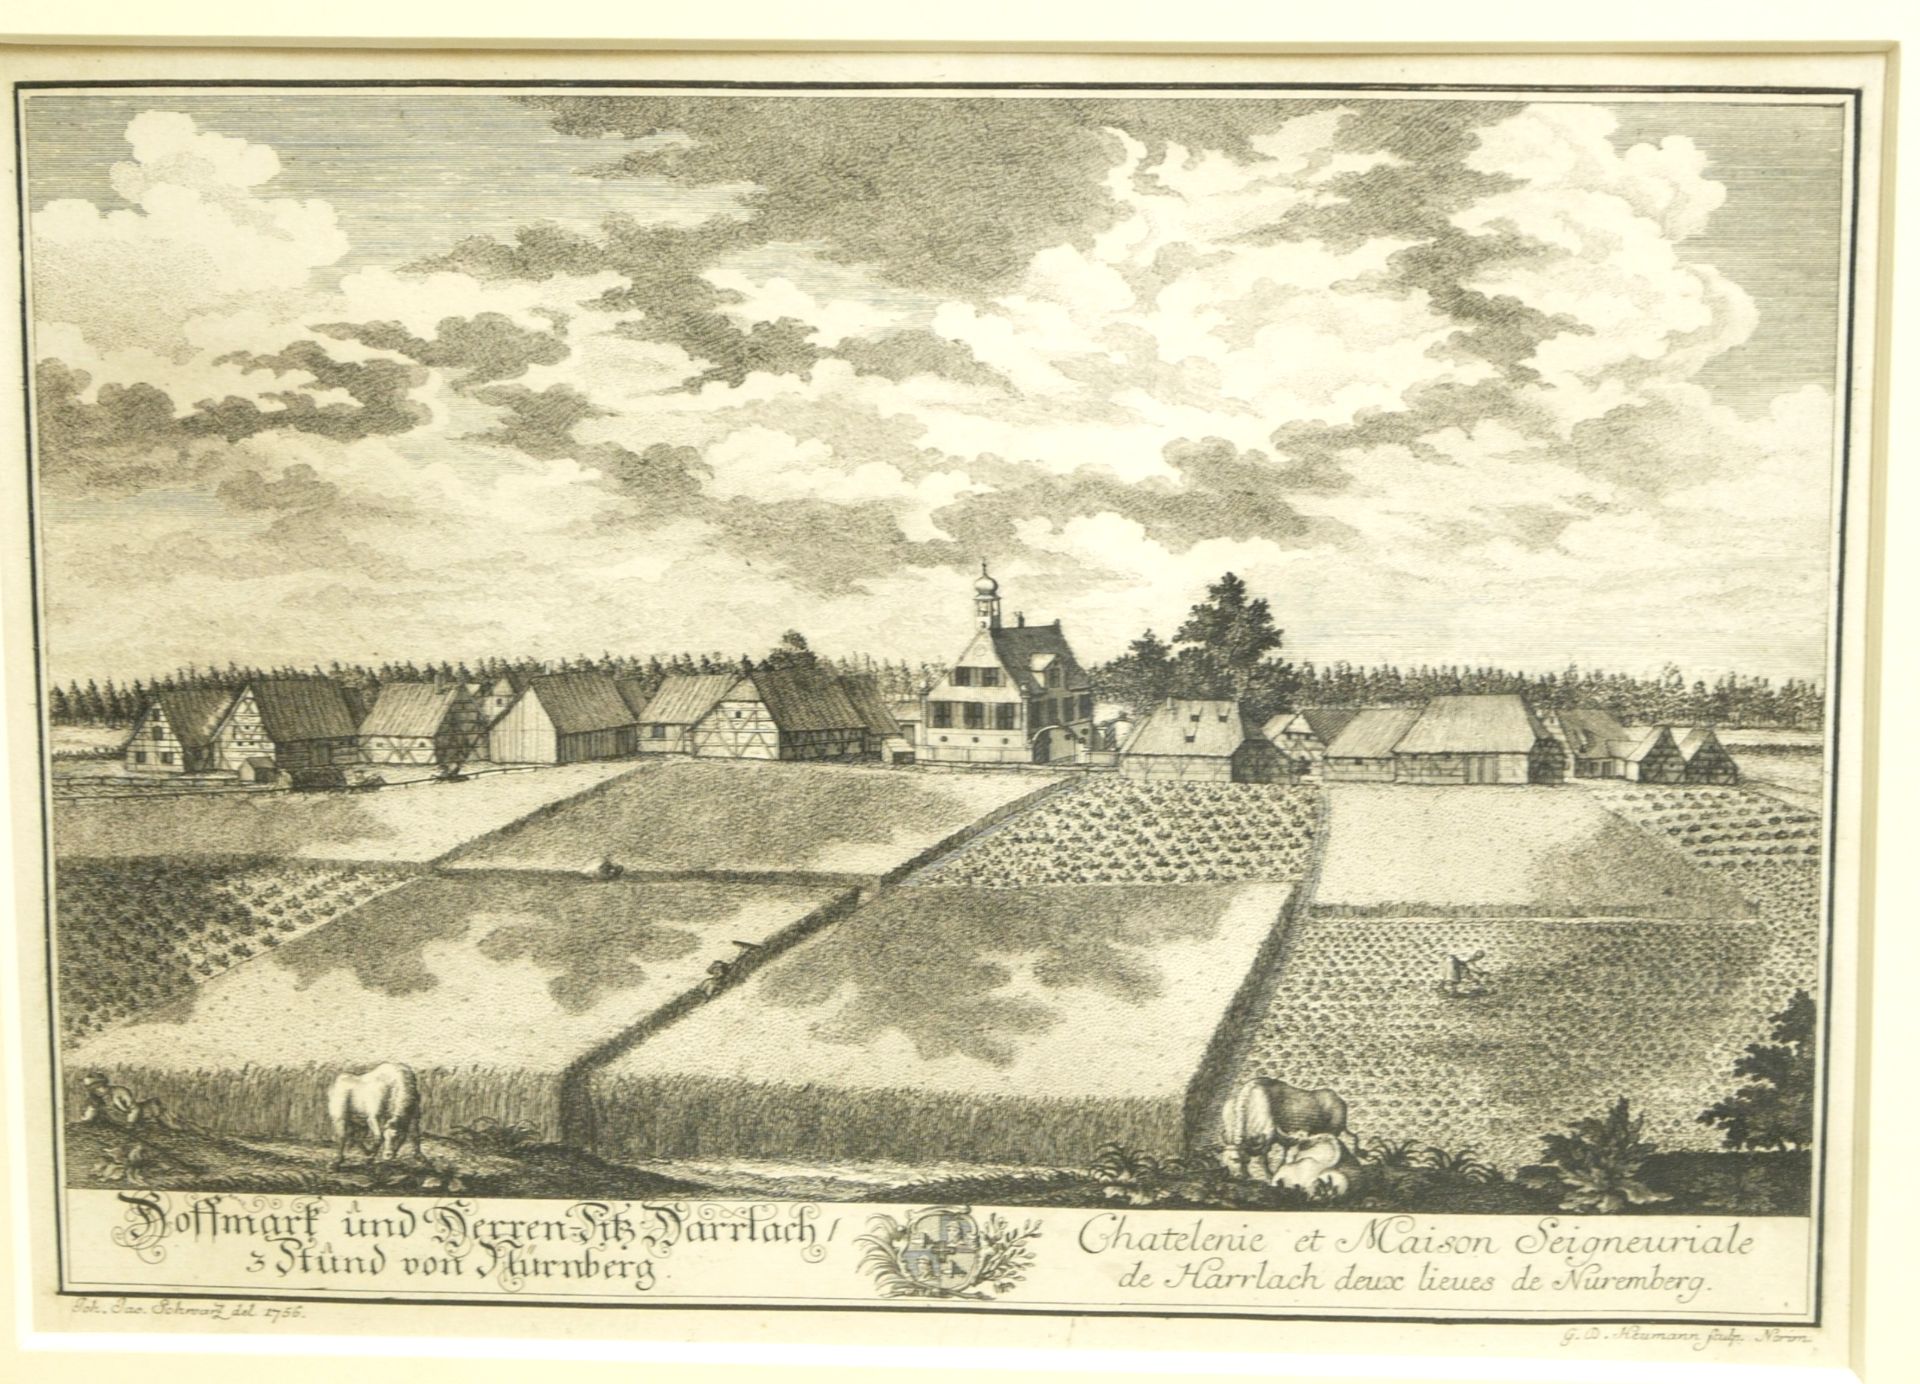 Heumann, Georg Daniel (1691-1759) - Hoffmark und Herren-Sitz Harrlach / 3 Stund von Nürnberg - Bild 2 aus 5